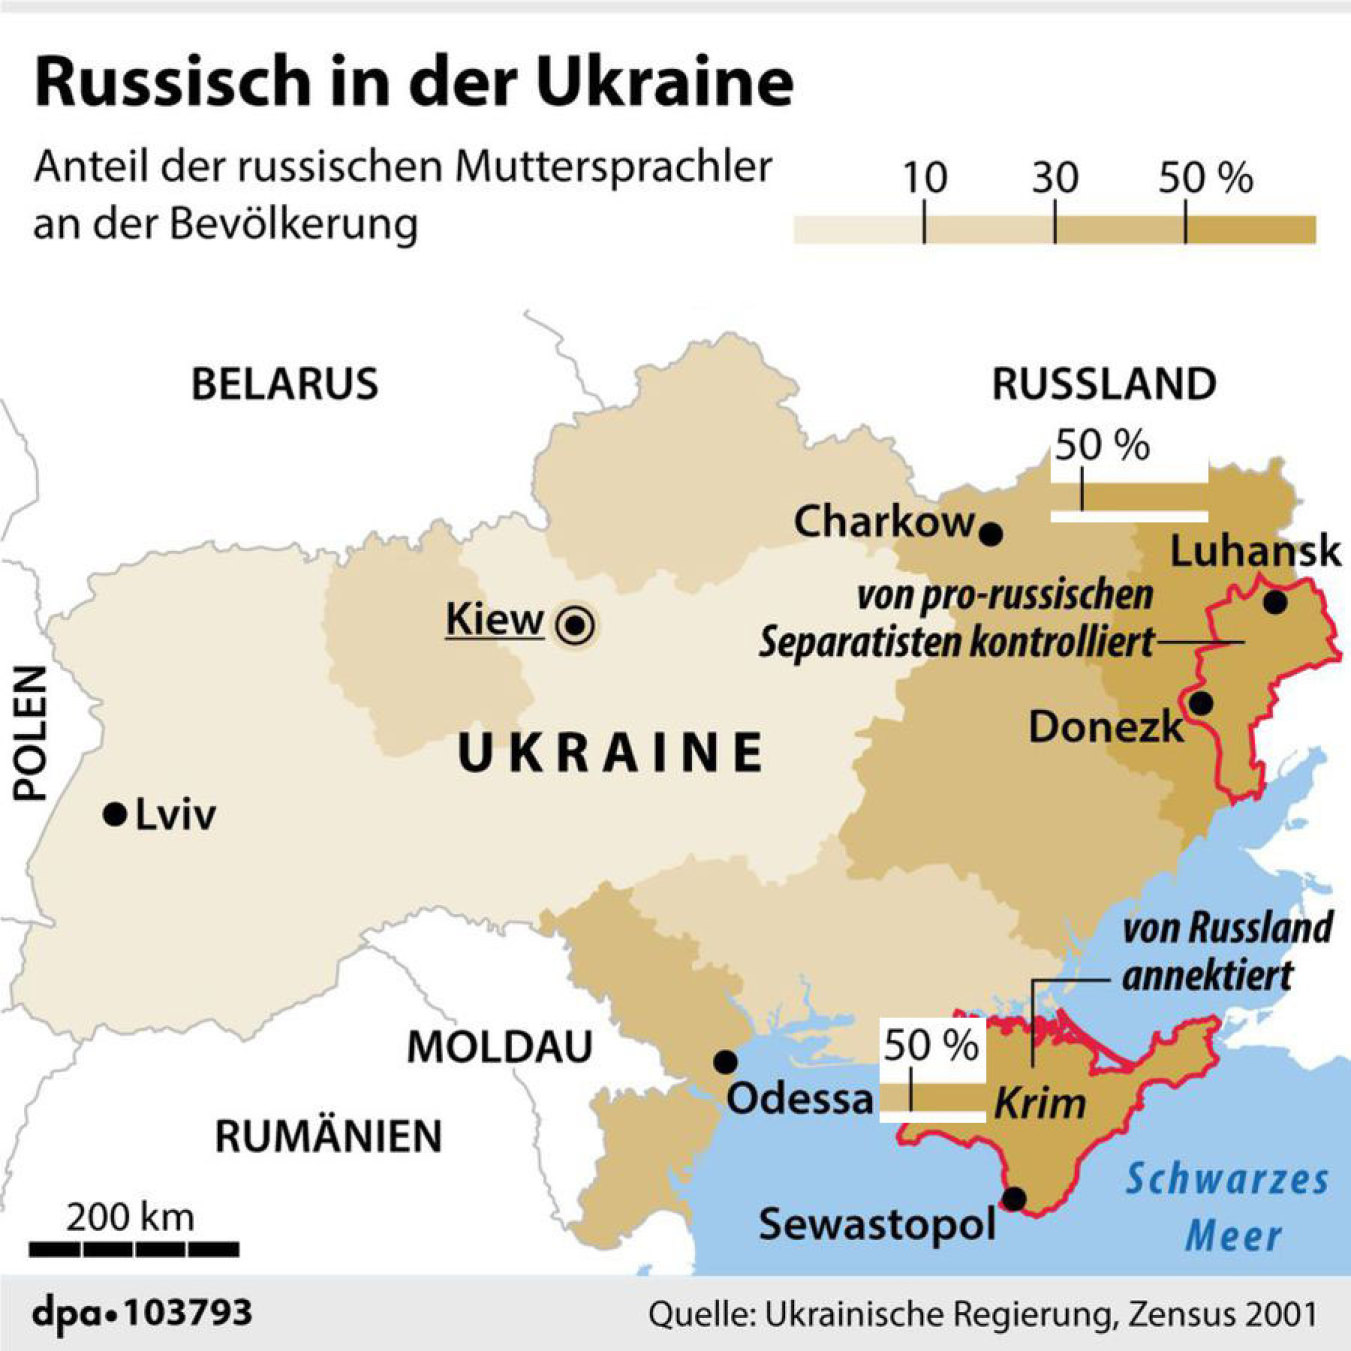 Anteil der russischen Muttersprachler an der Bevölkerung der Ukraine